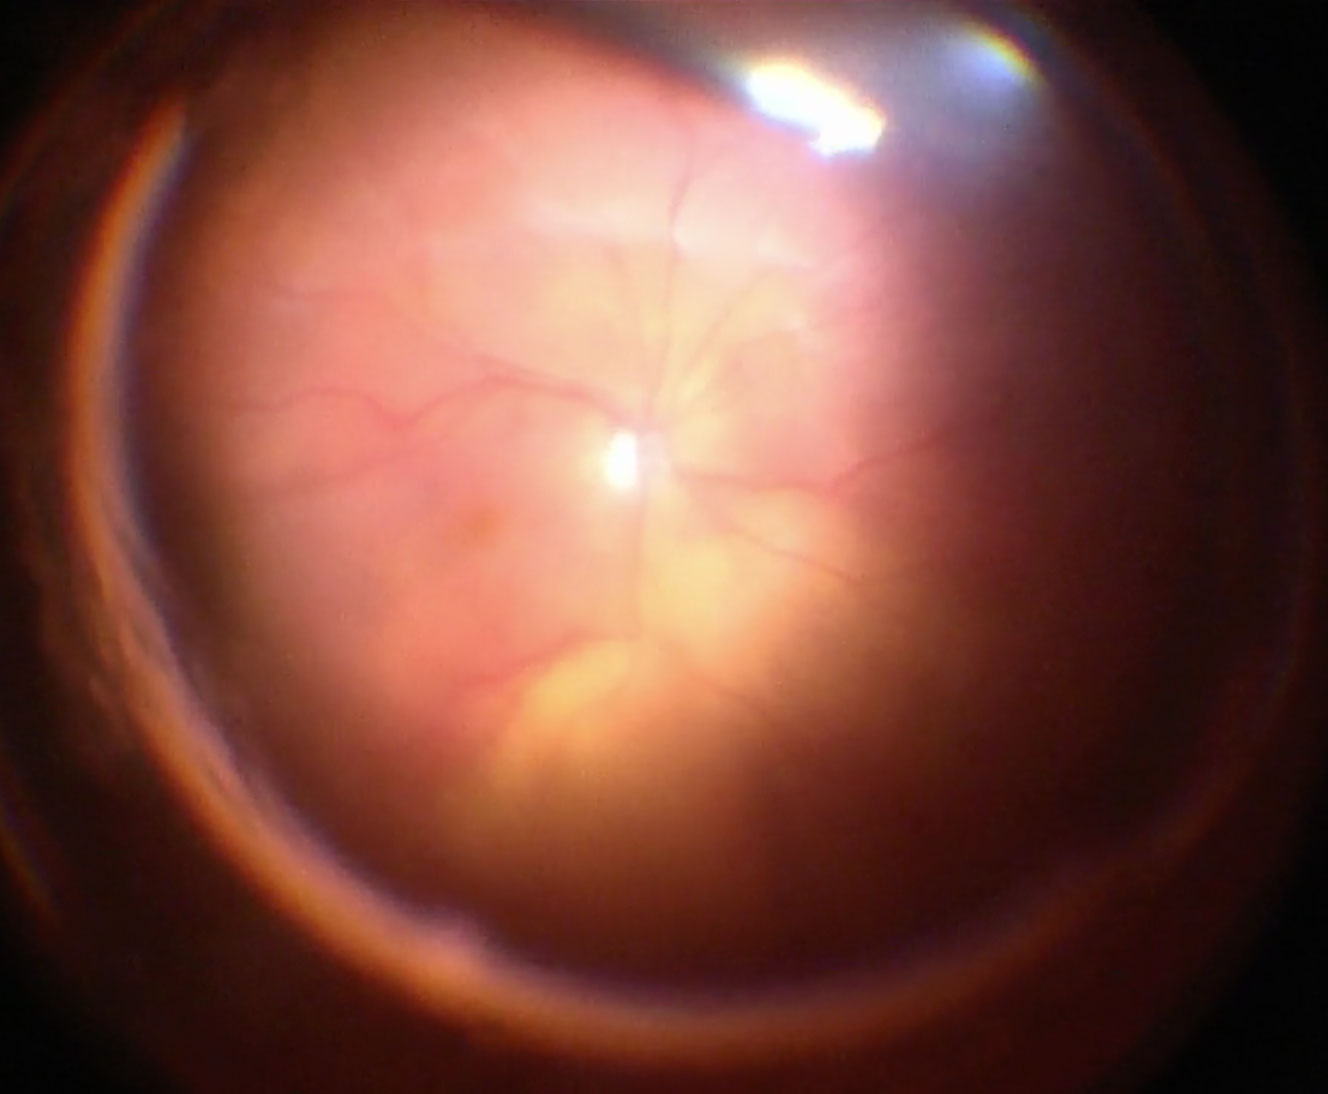 Figure 10.1.1 Total Retinal Detachment